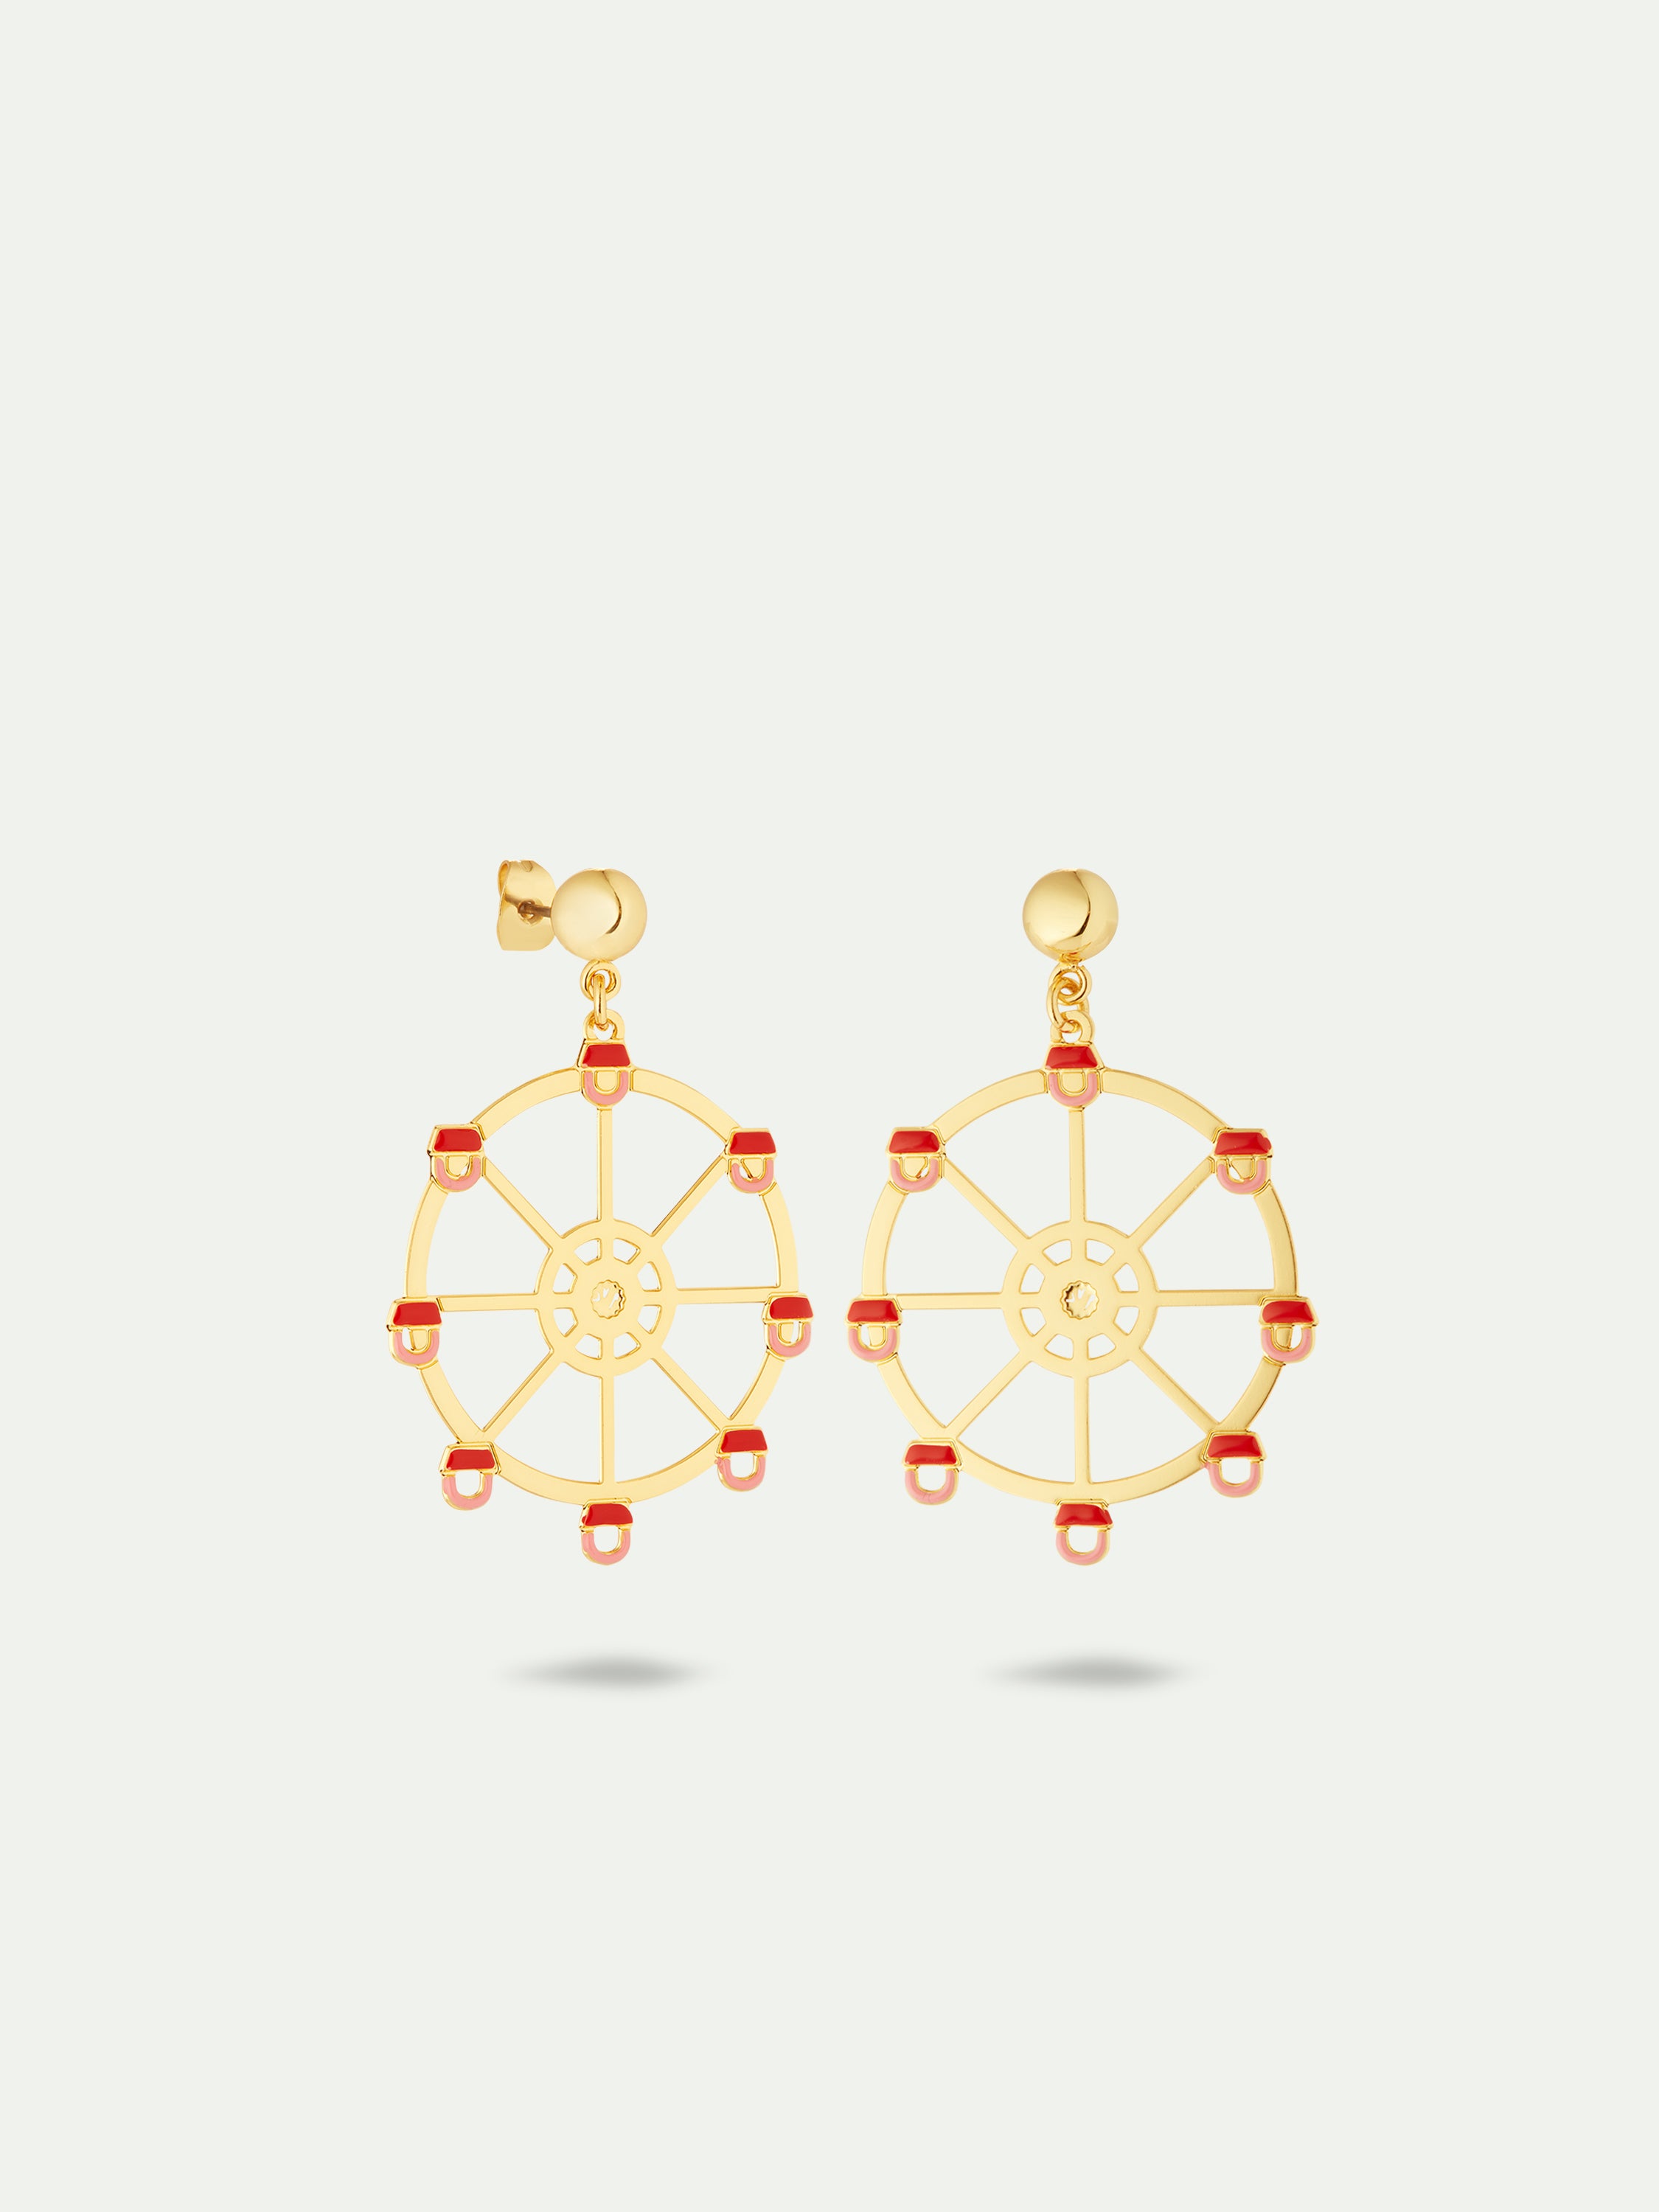 Ferris wheel earrings